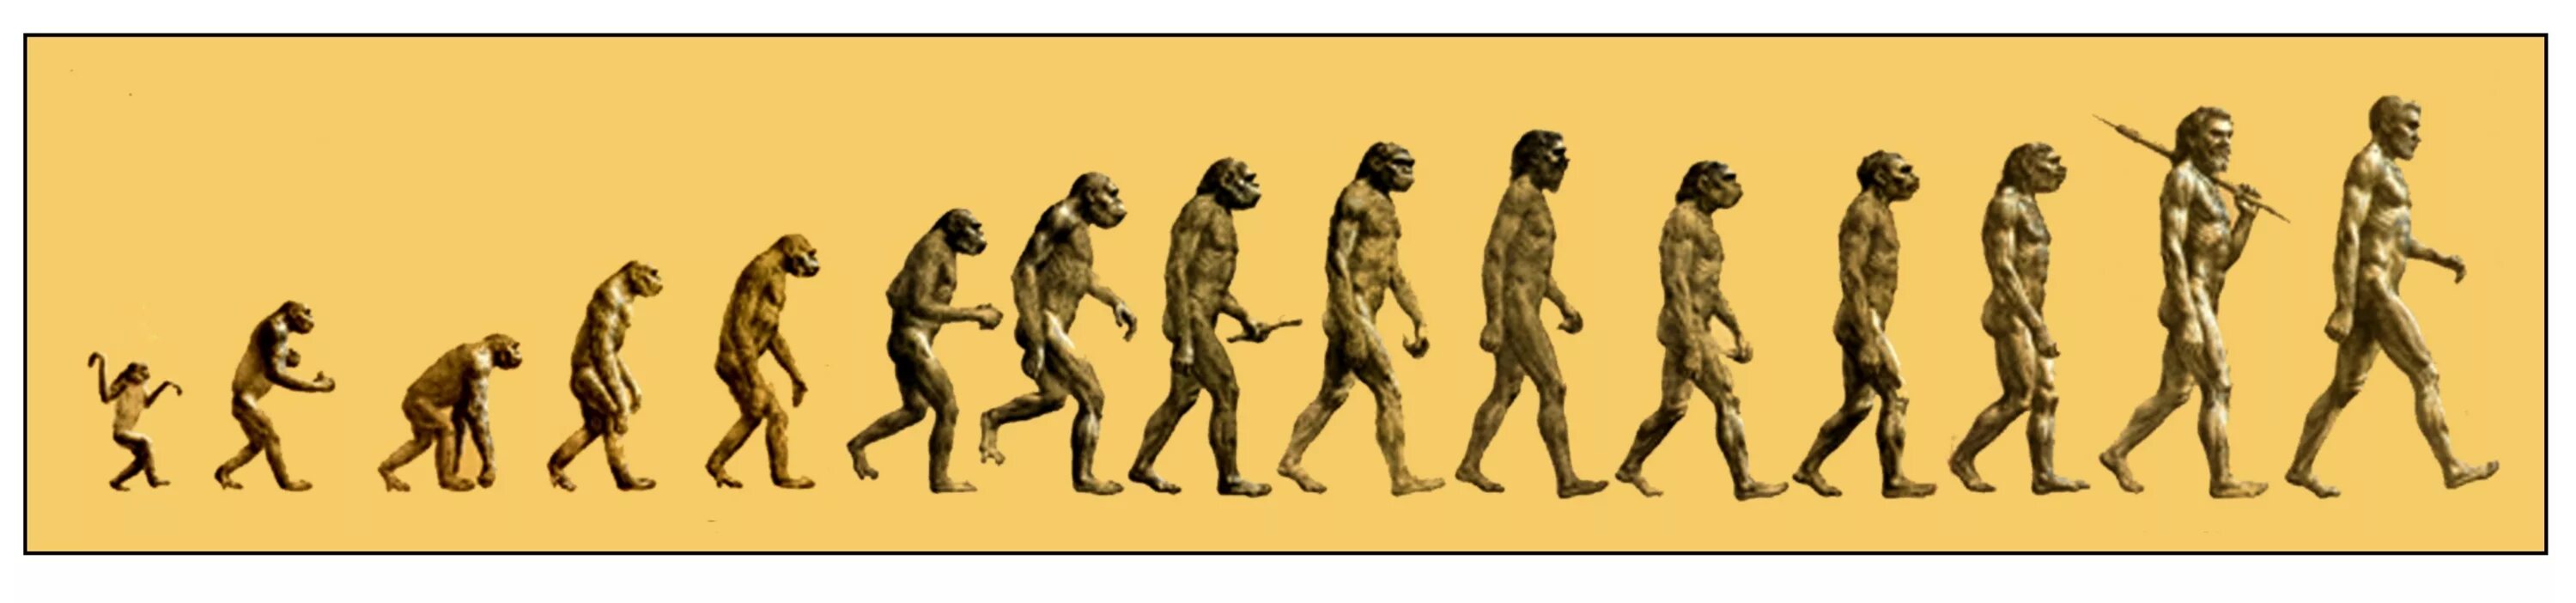 Австралопитек неандерталец хомо сапиенс. Этапы эволюции человека,хомо сапиенс. Австралопитек Эволюция. Этапы эволюции хомо сапиенс.